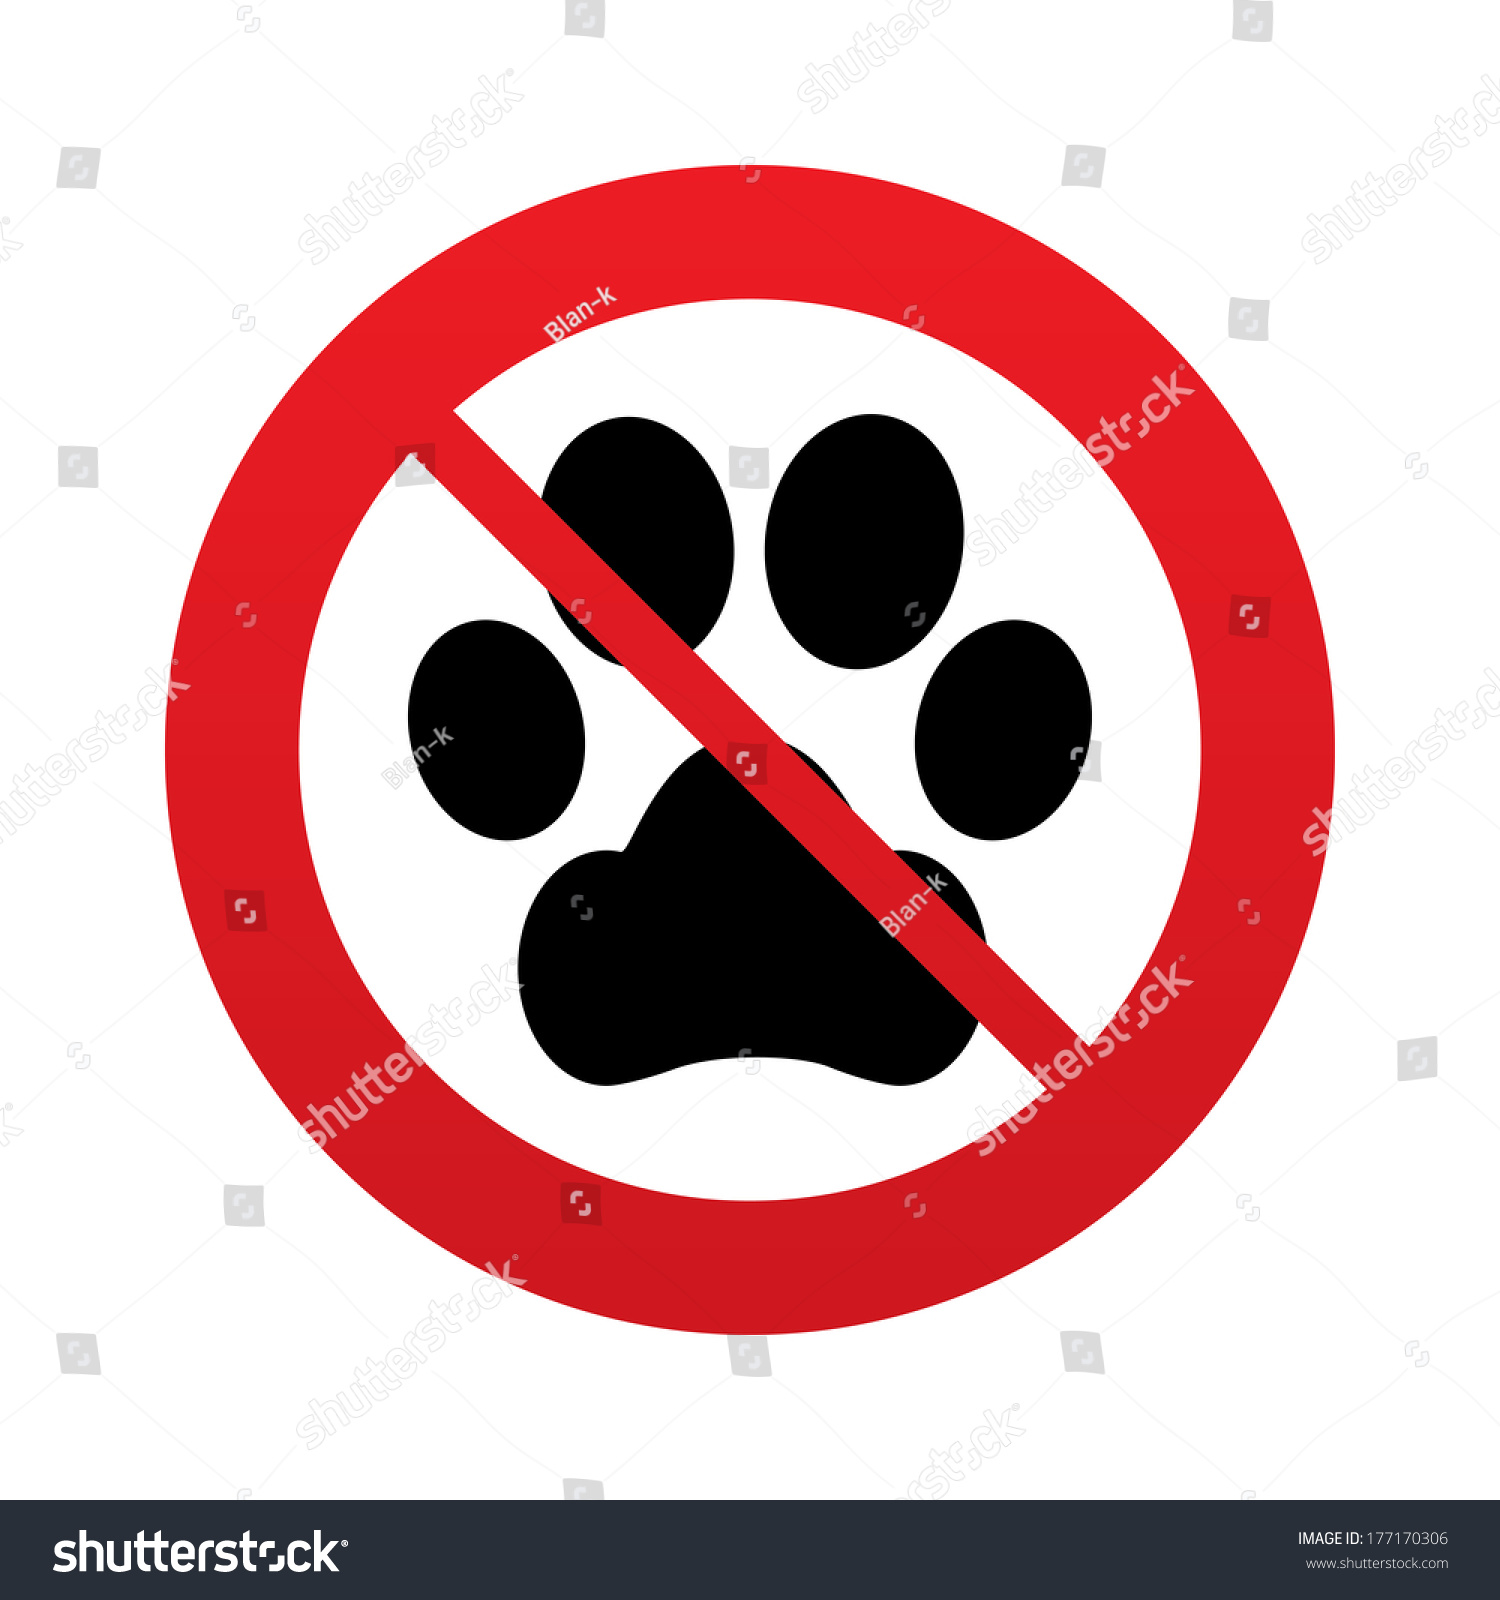 Ежик запрещен. Лапы знак запрещено. Лапка собачья и знак энергии. Не лови диких животных и не уноси их домой знак.